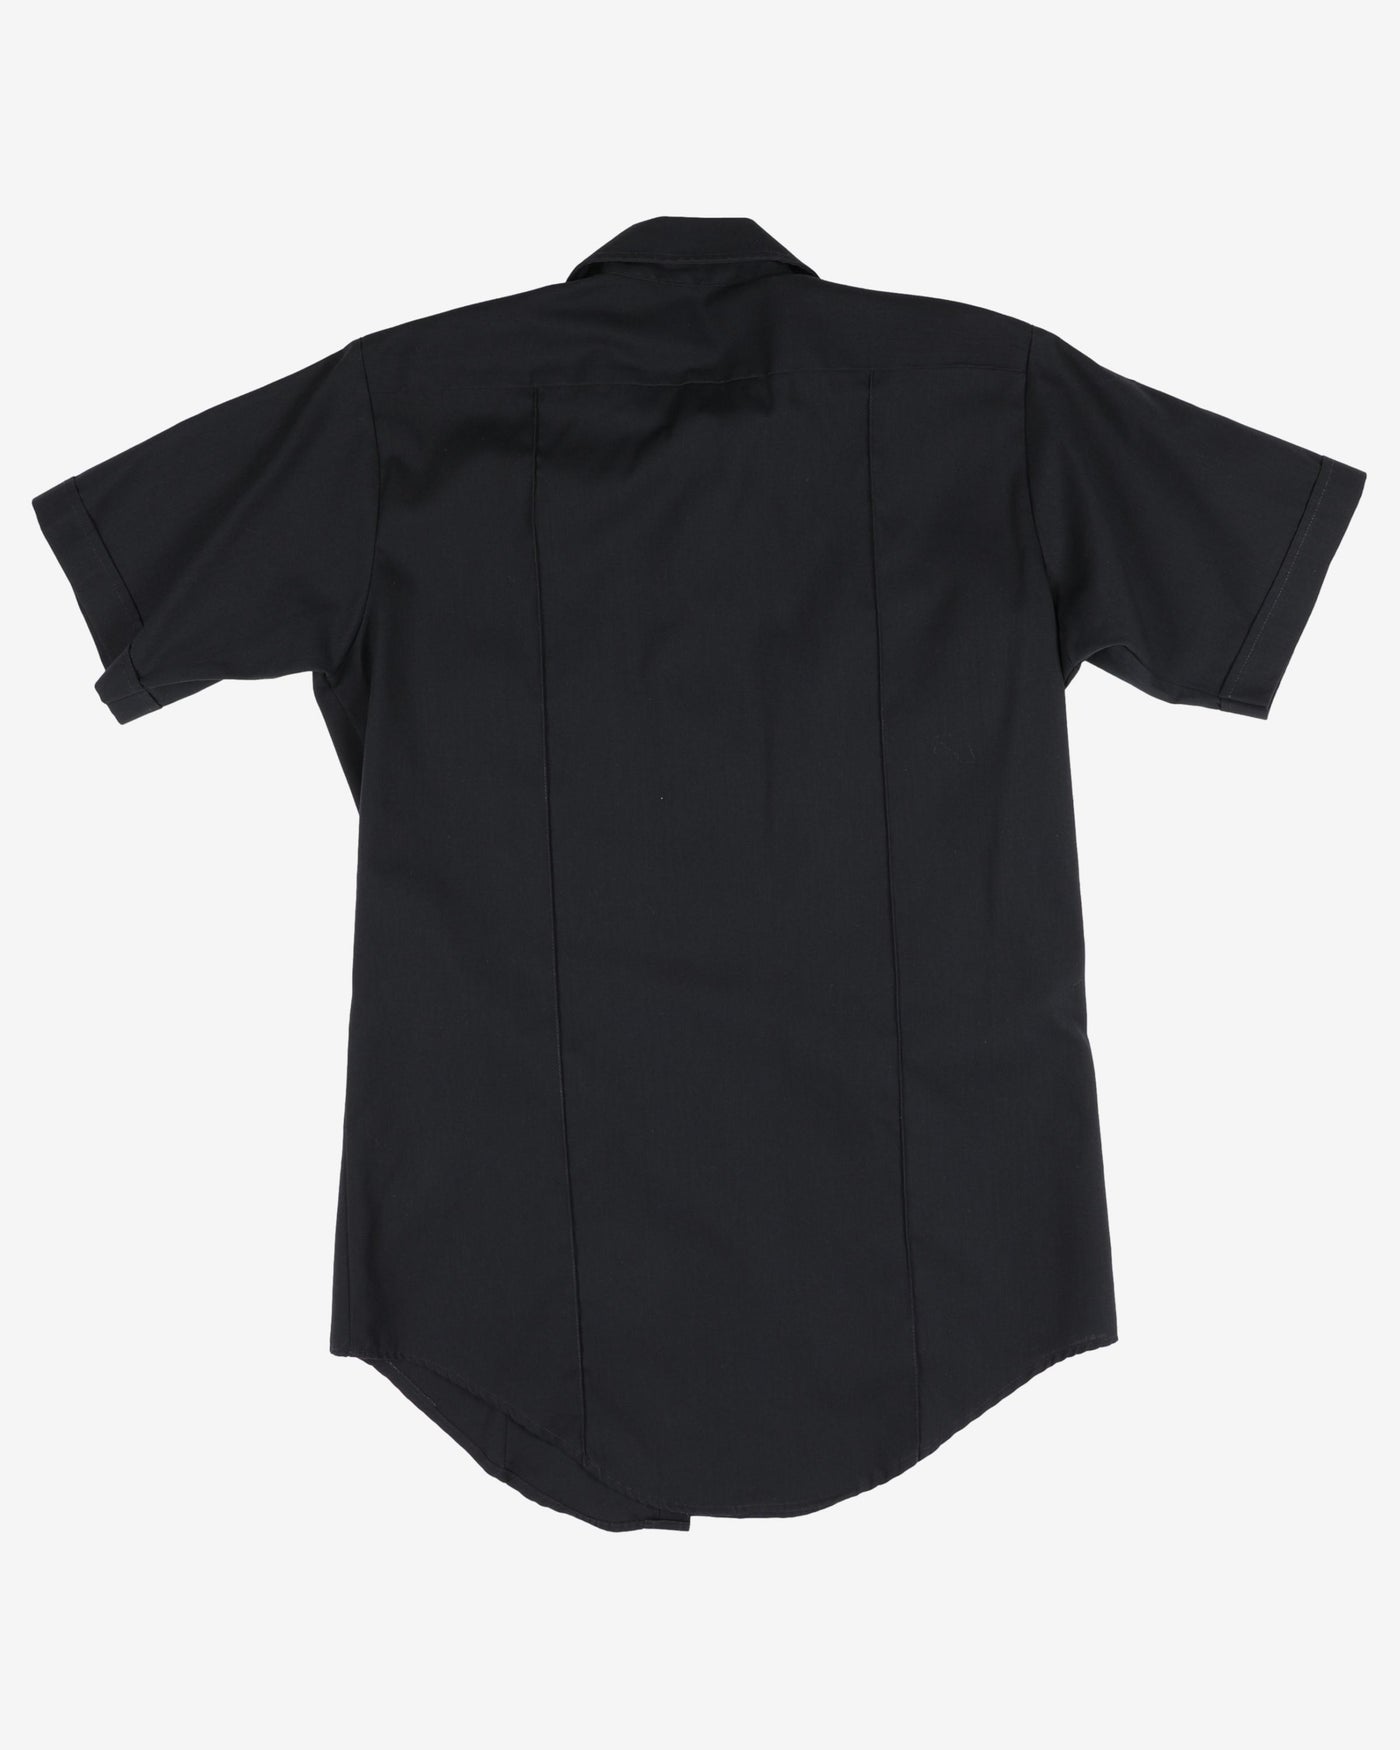 Rapier Navy Short-Sleeve Work Shirt - L